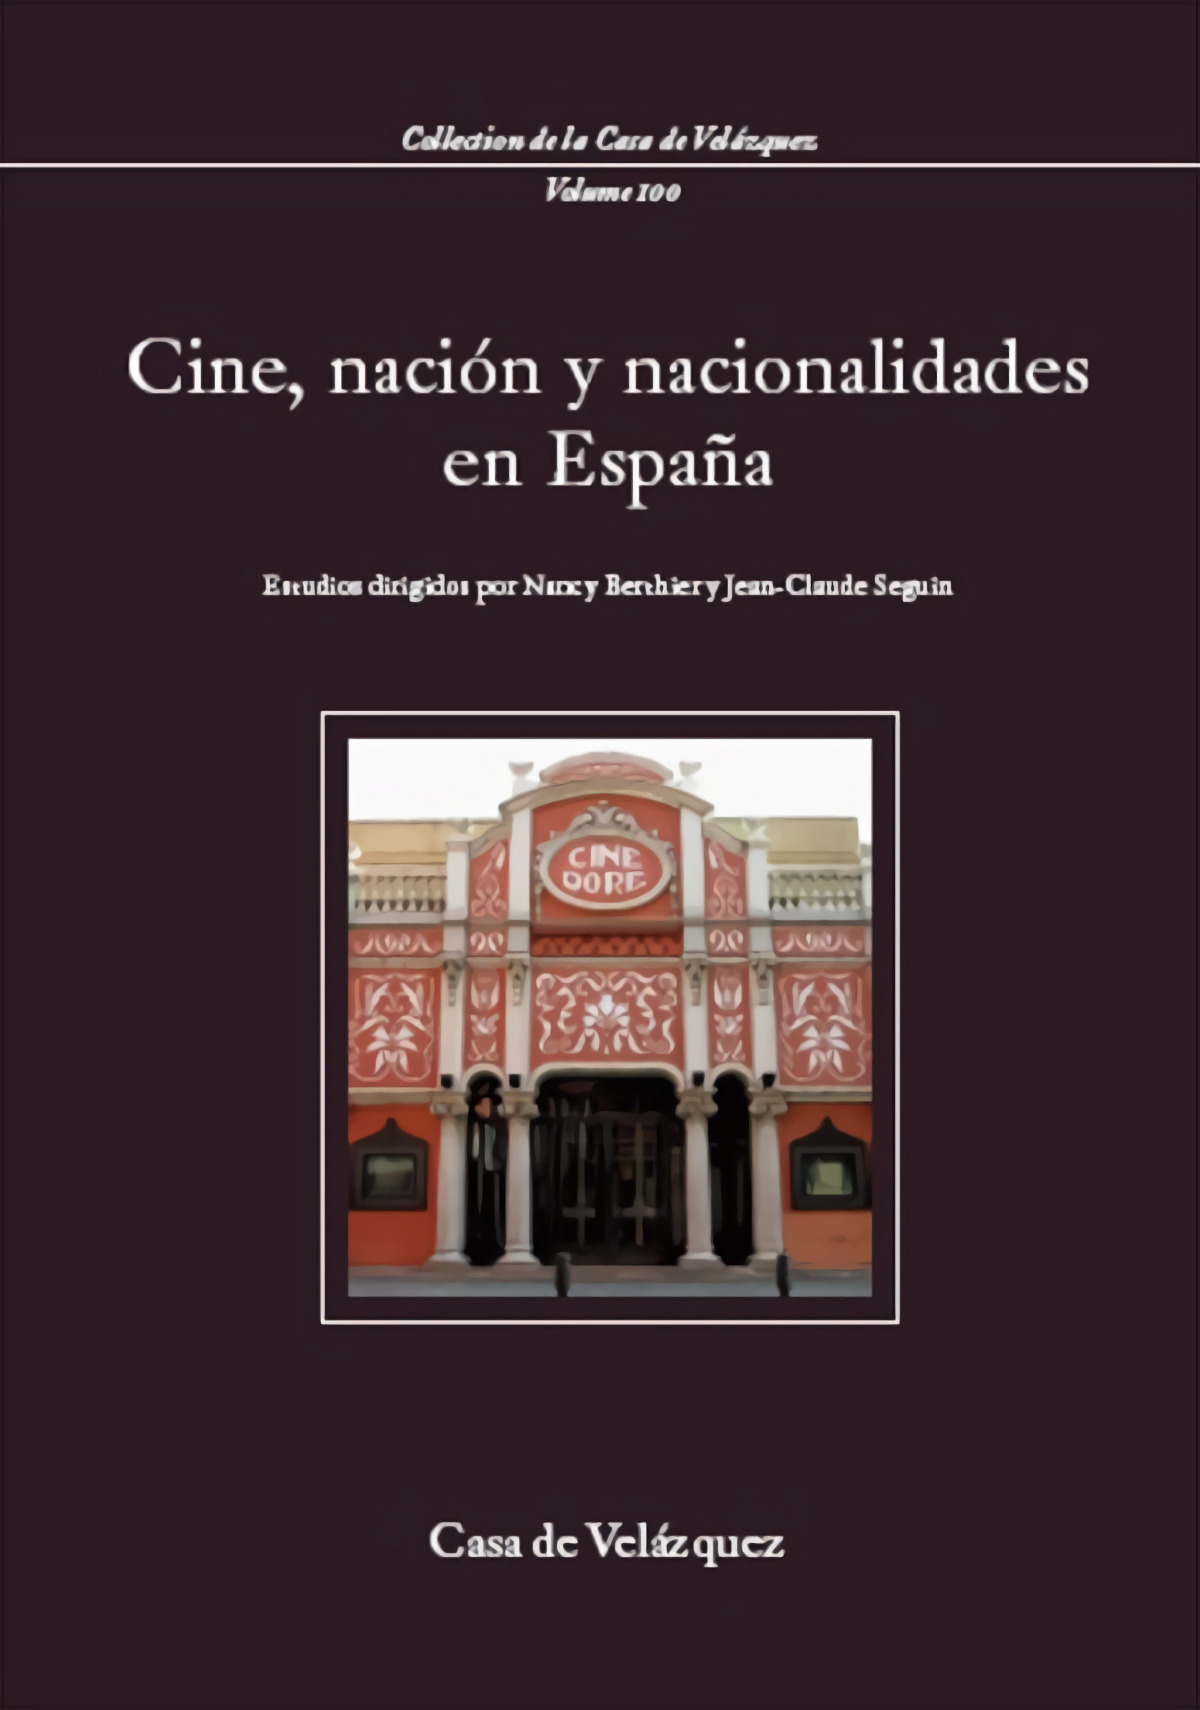 Cine, nación y nacionalidades en España - Seguin, Jean-Claude/ Berthier, Nancy